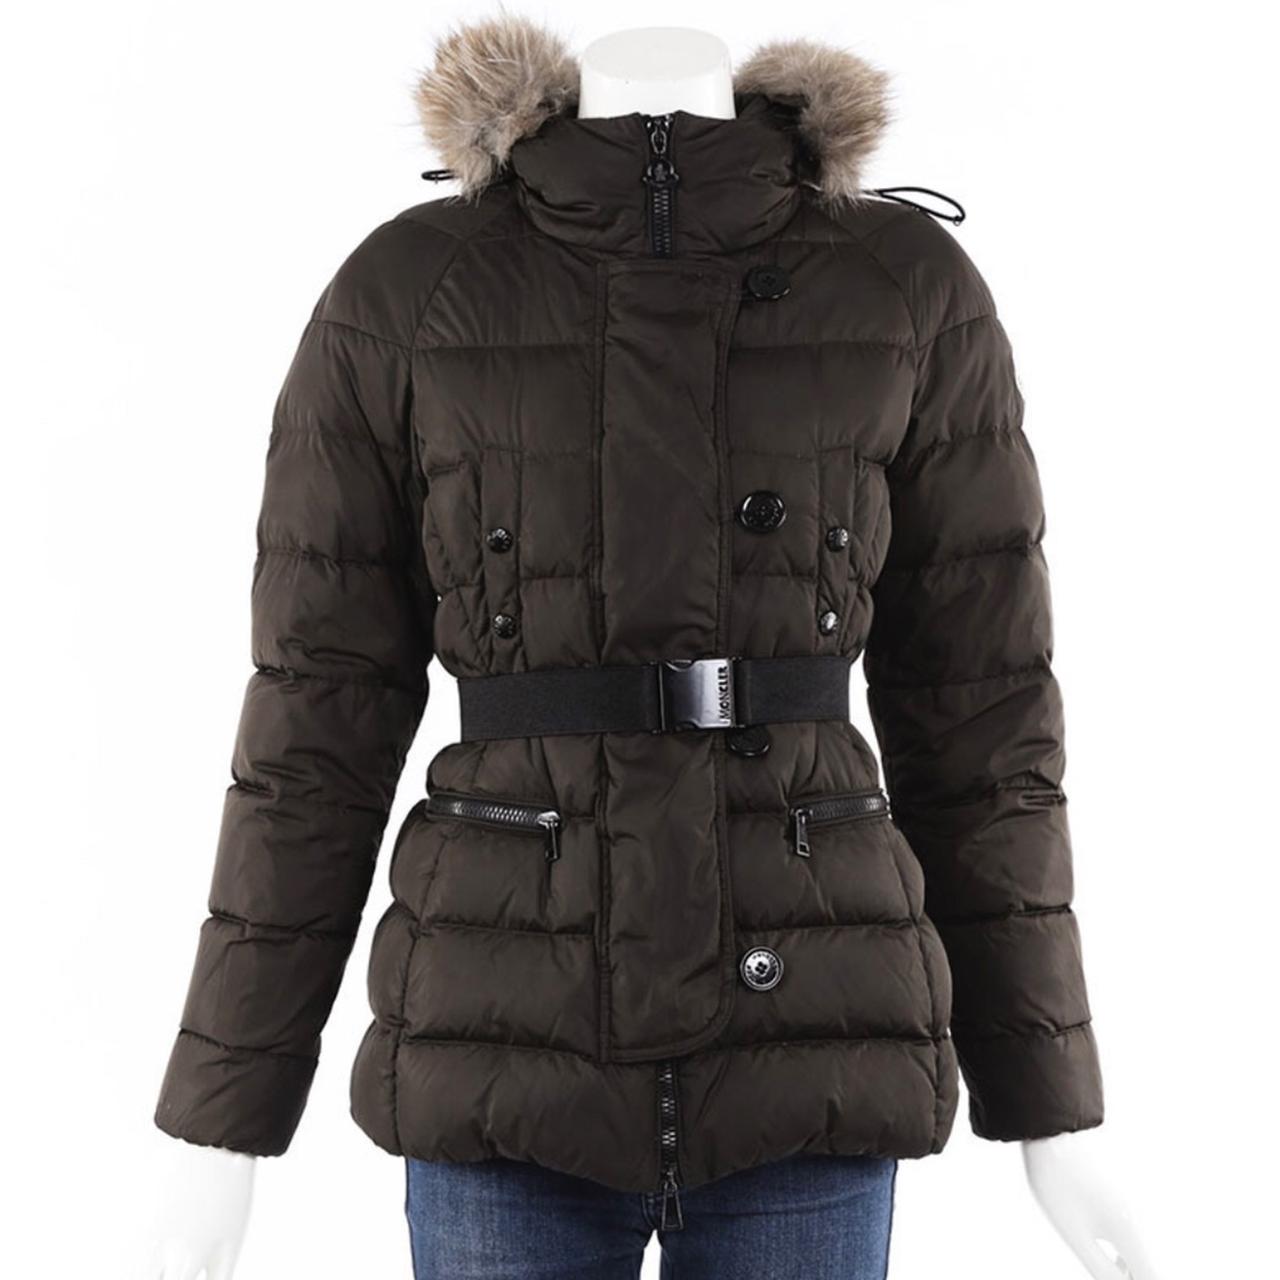 Moncler Genette Ladies Jacket - Size 2 (x)